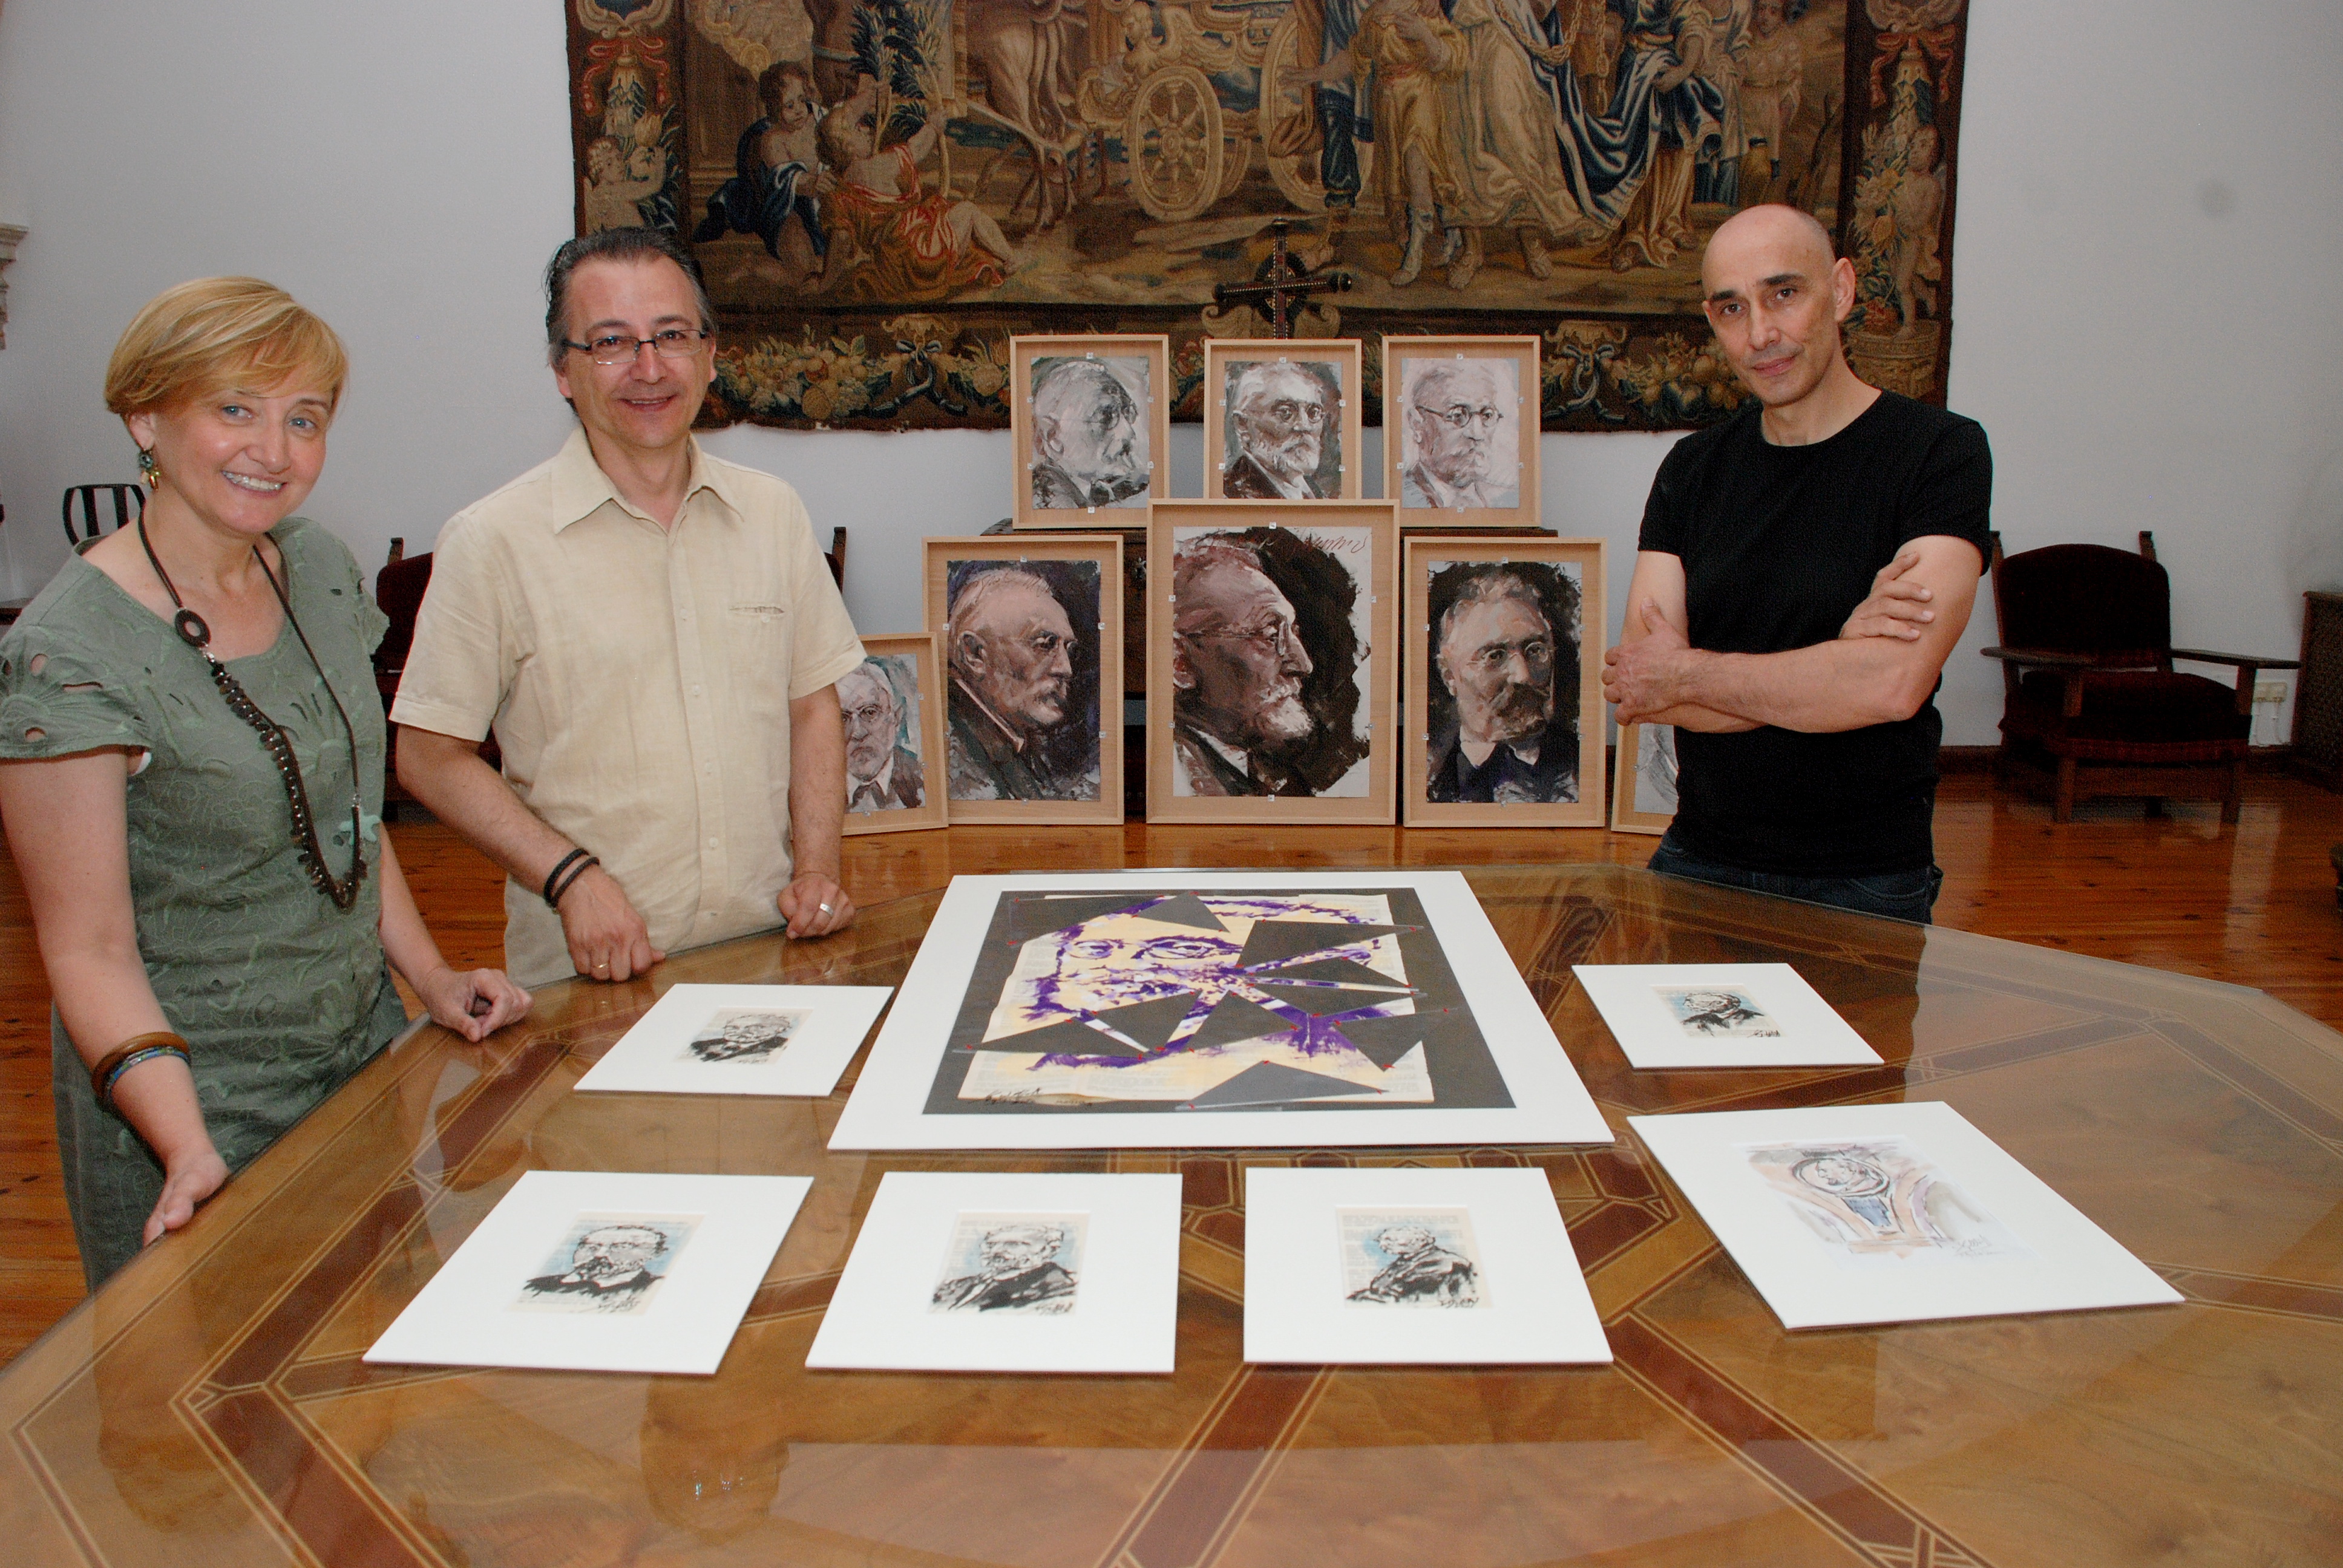 La Casa Museo Unamuno recibe una serie de trabajos artísticos inspirados en la figura de Miguel de Unamuno